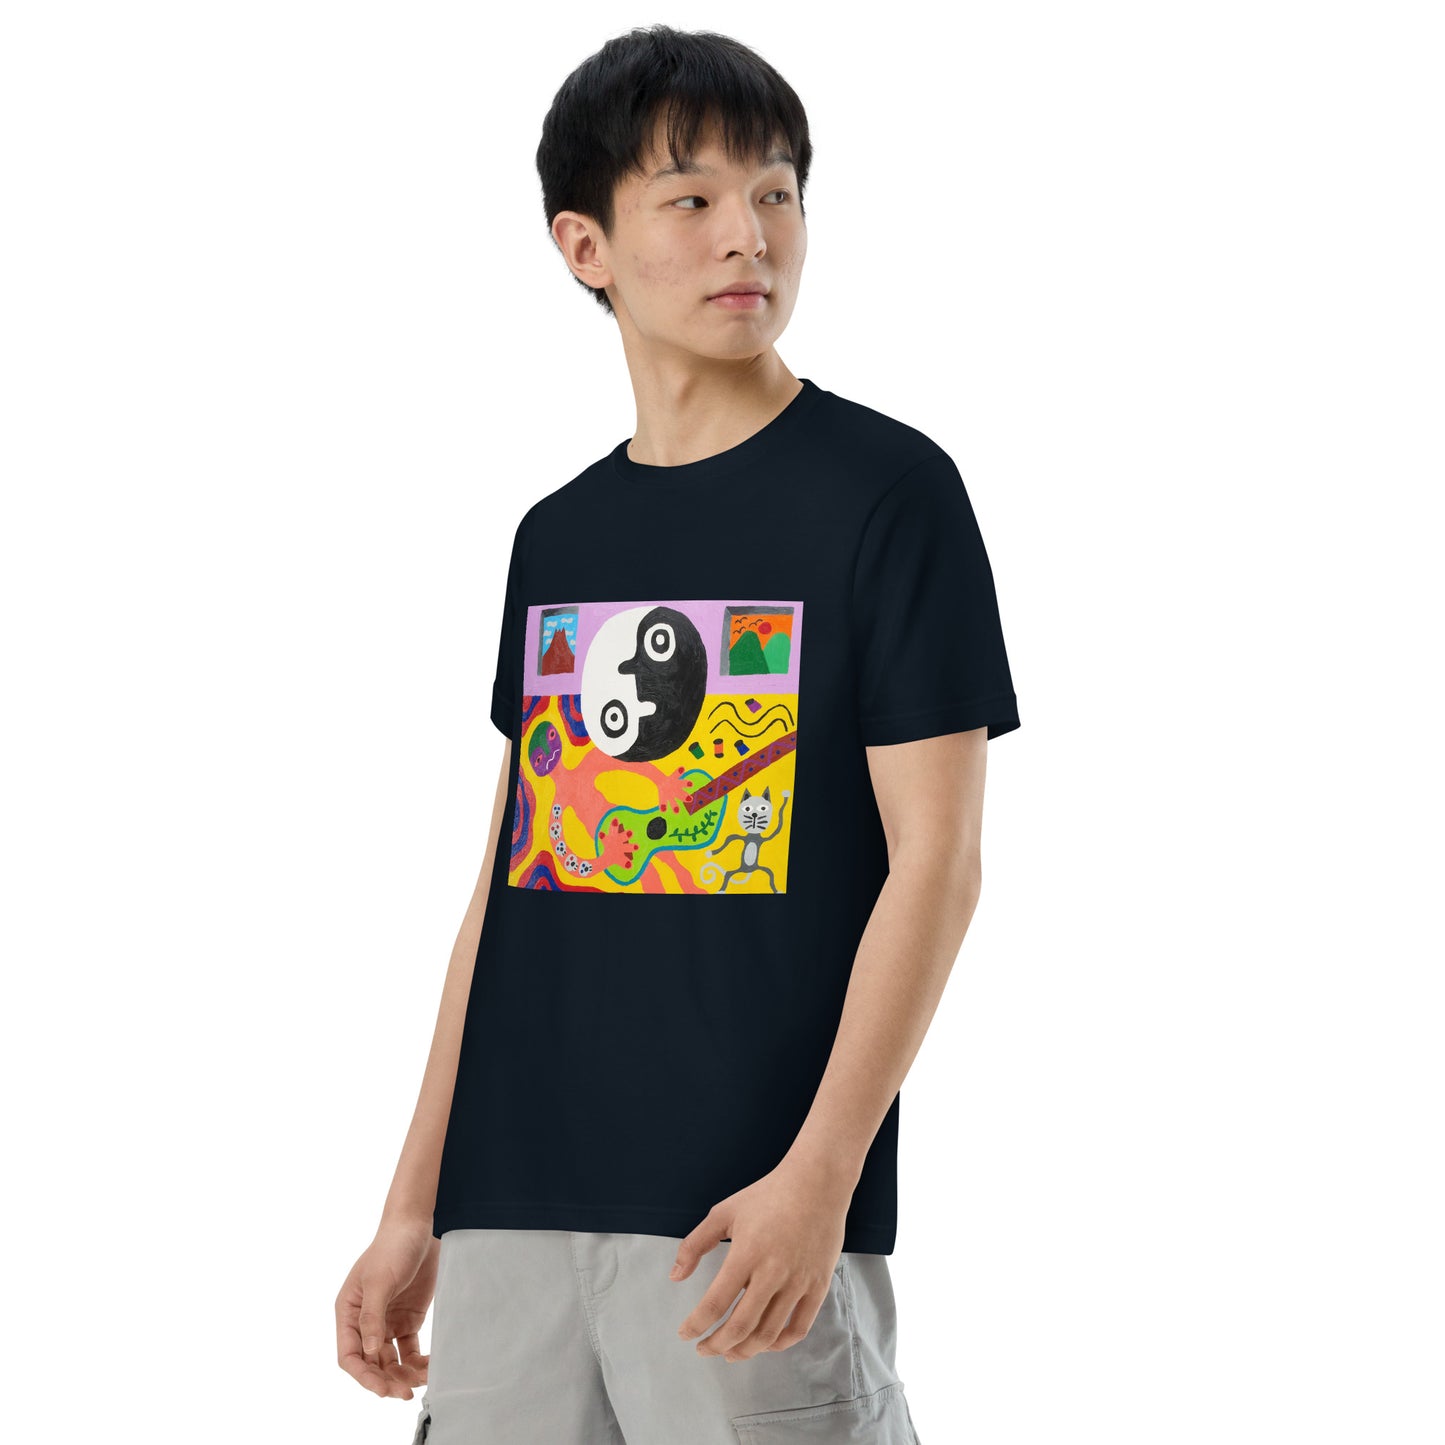 045-清水誠治-2-前面プリントTシャツ-アートをデザイン